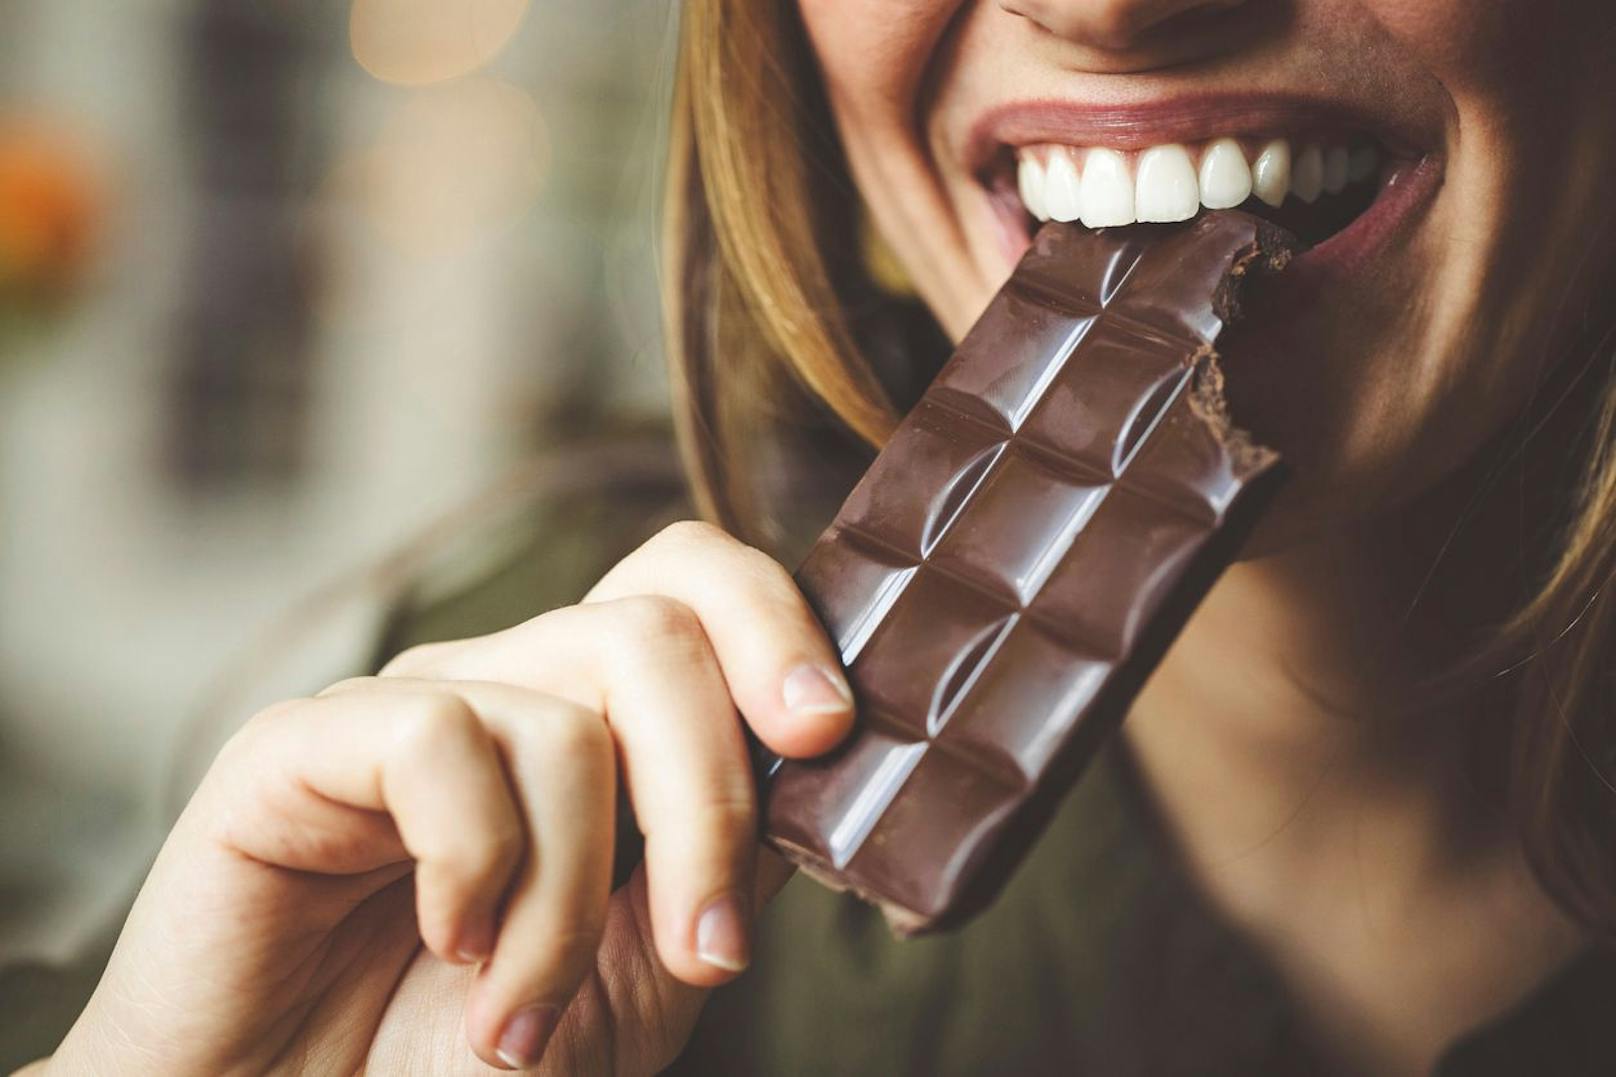 Wenn du schon an einem Schokoriegel knabbern möchtest, dann sorge dafür, dass es sich um dunkle Schokolade handelt. Schokolade mit einem hohen Kakaogehalt kann zellschützend und auch blutdrucksenkend wirken. 